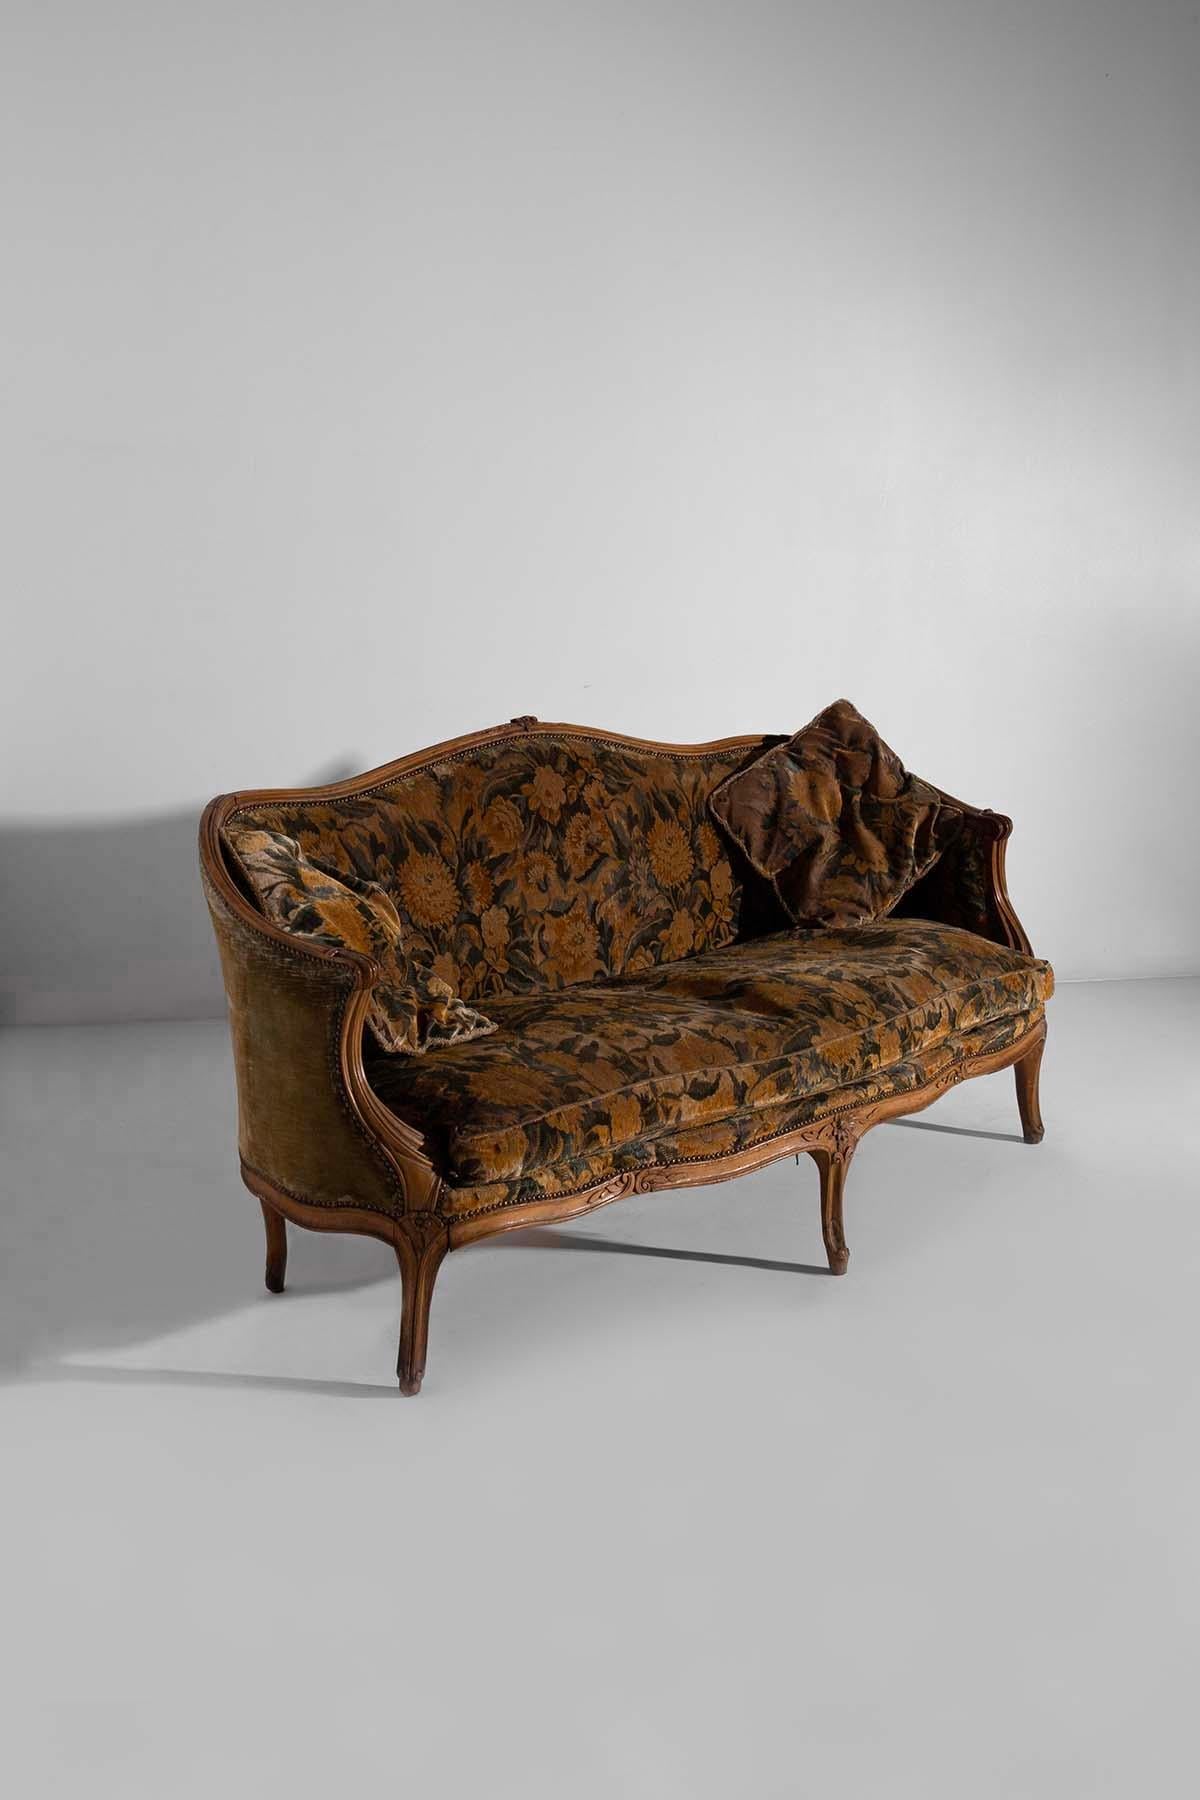 Entdecken Sie den Charme dieses Sofas aus dem frühen 20. Jahrhundert mit italienischem Floralstoff. Jedes Detail dieses Sofas, von den sorgfältig ausgeführten Holzschnitzereien bis hin zum Vintage-Stoff, spiegelt italienische Kunst und